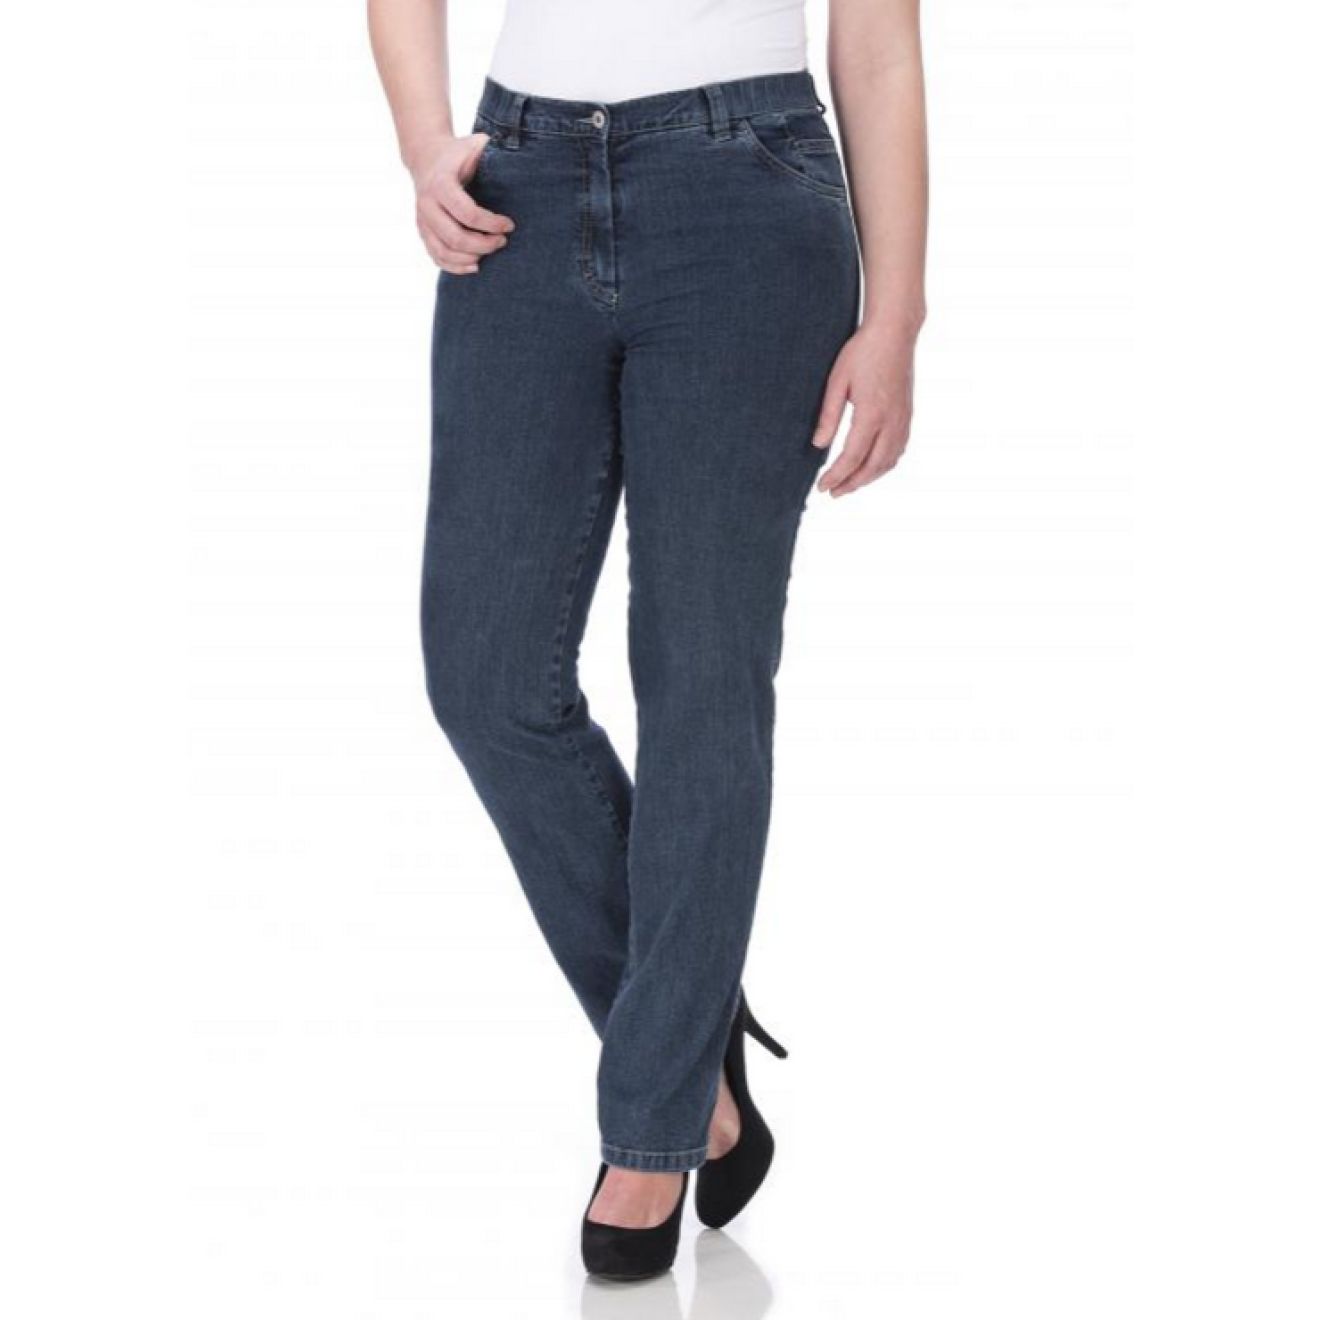 KjBrand Damen Stretch-Jeans Betty Schwarz Kurz-Größe mit Komfort-Bund Plus Size 